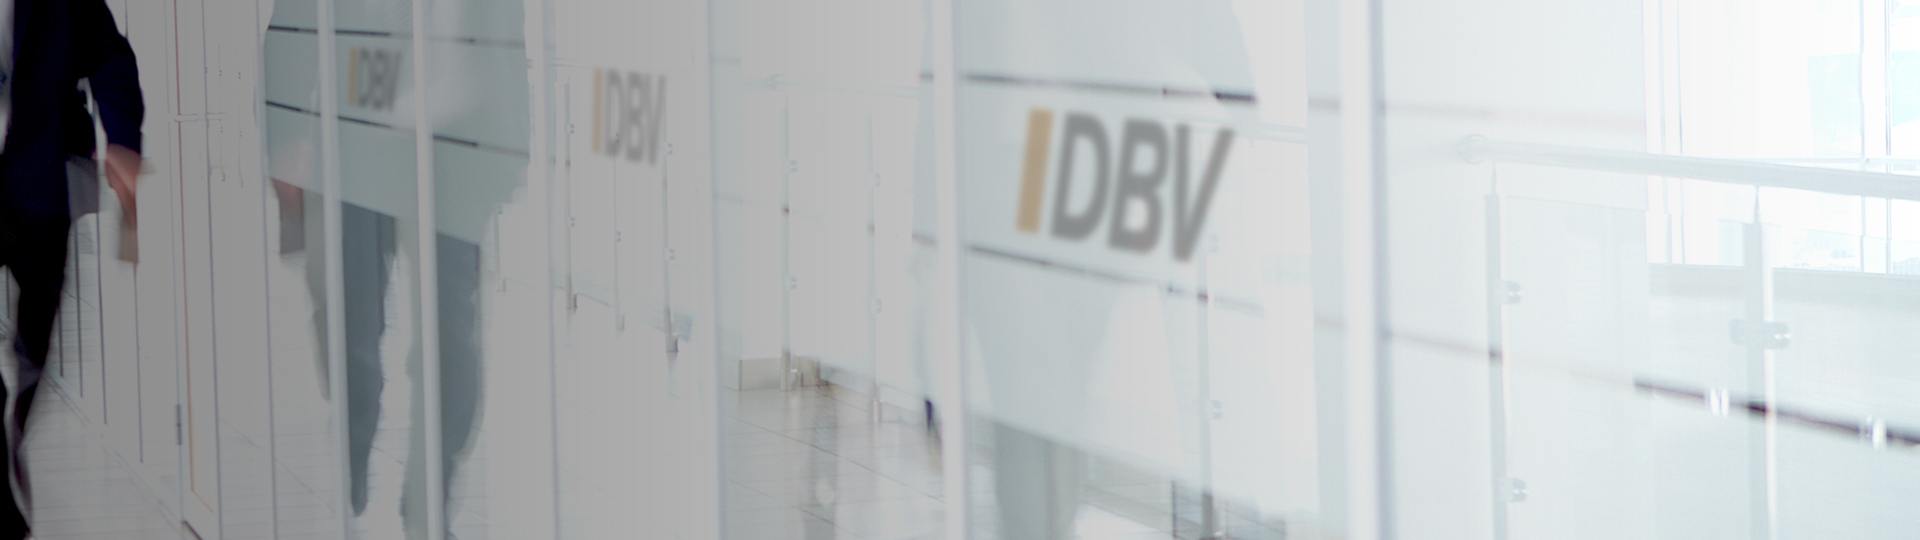 Unfallversicherung | DBV Hannover Hornig & Knoch oHG